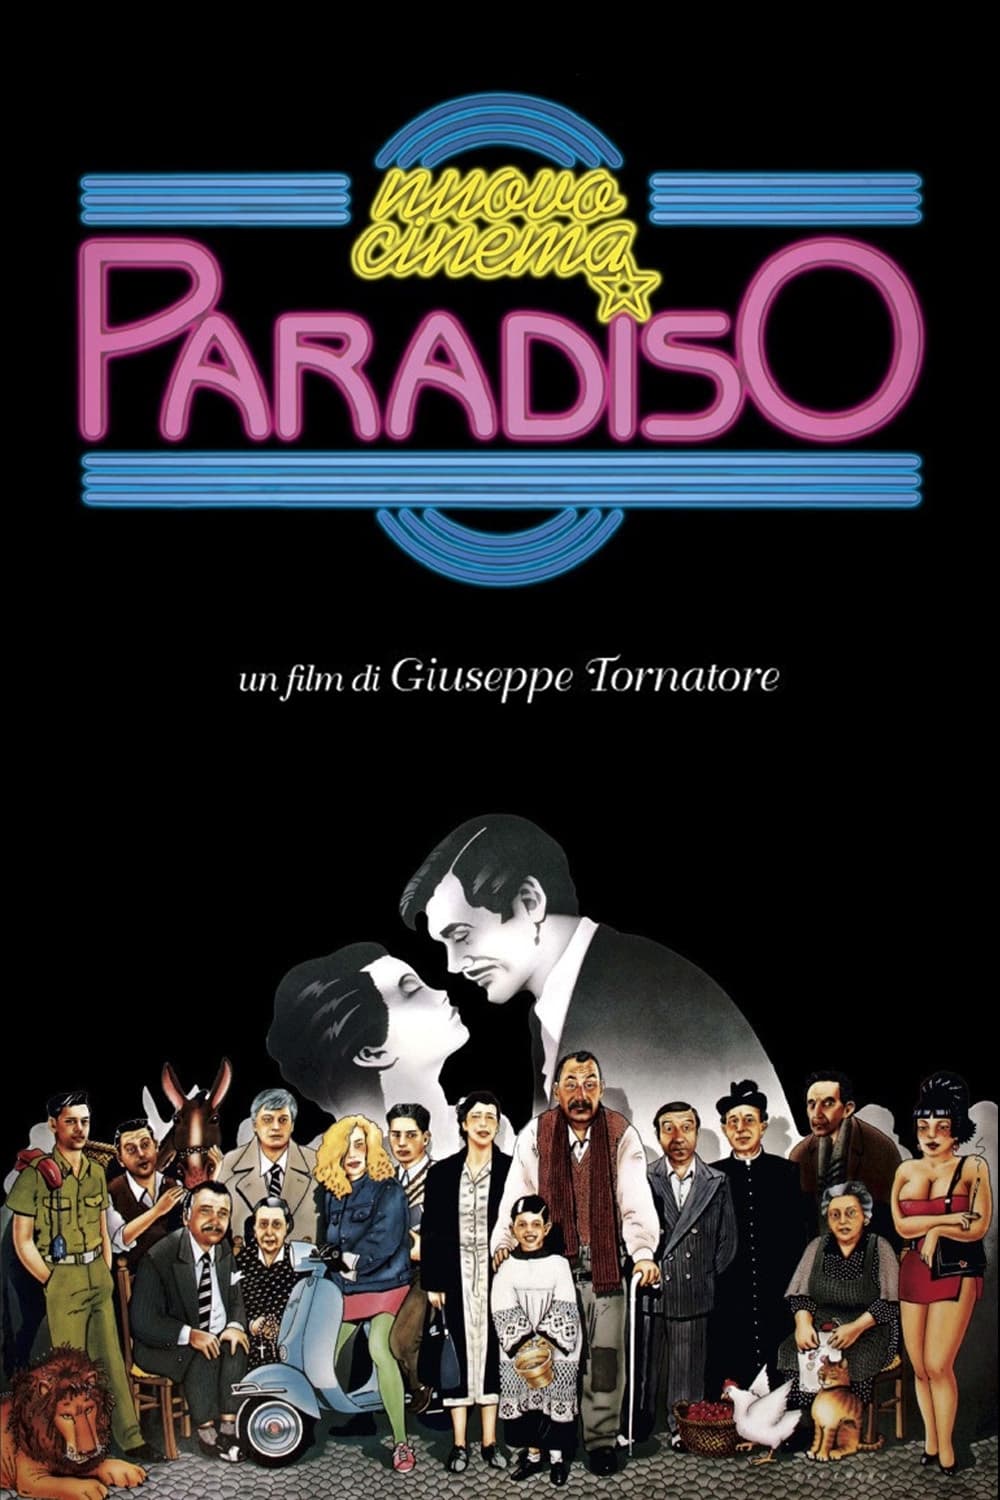 Rạp Chiếu Bóng Thiên Đường (Cinema Paradiso) [1988]